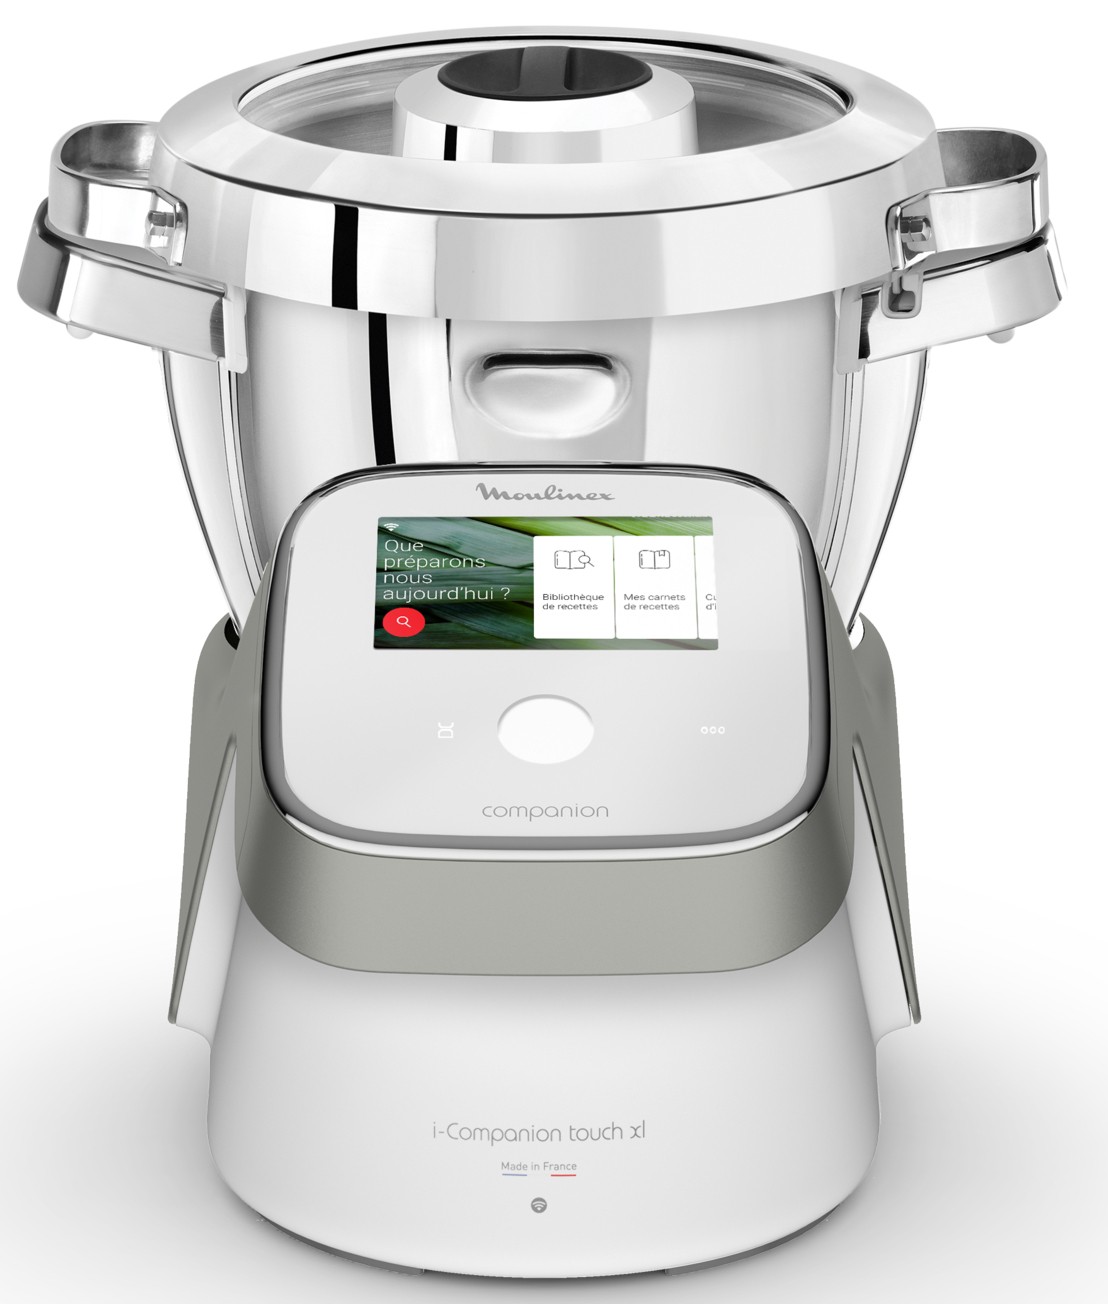 MOULINEX Robot cuiseur I-COMPANION Touch XL HF936E00 écran tactile 1500W Blanc et gris - HF936E00